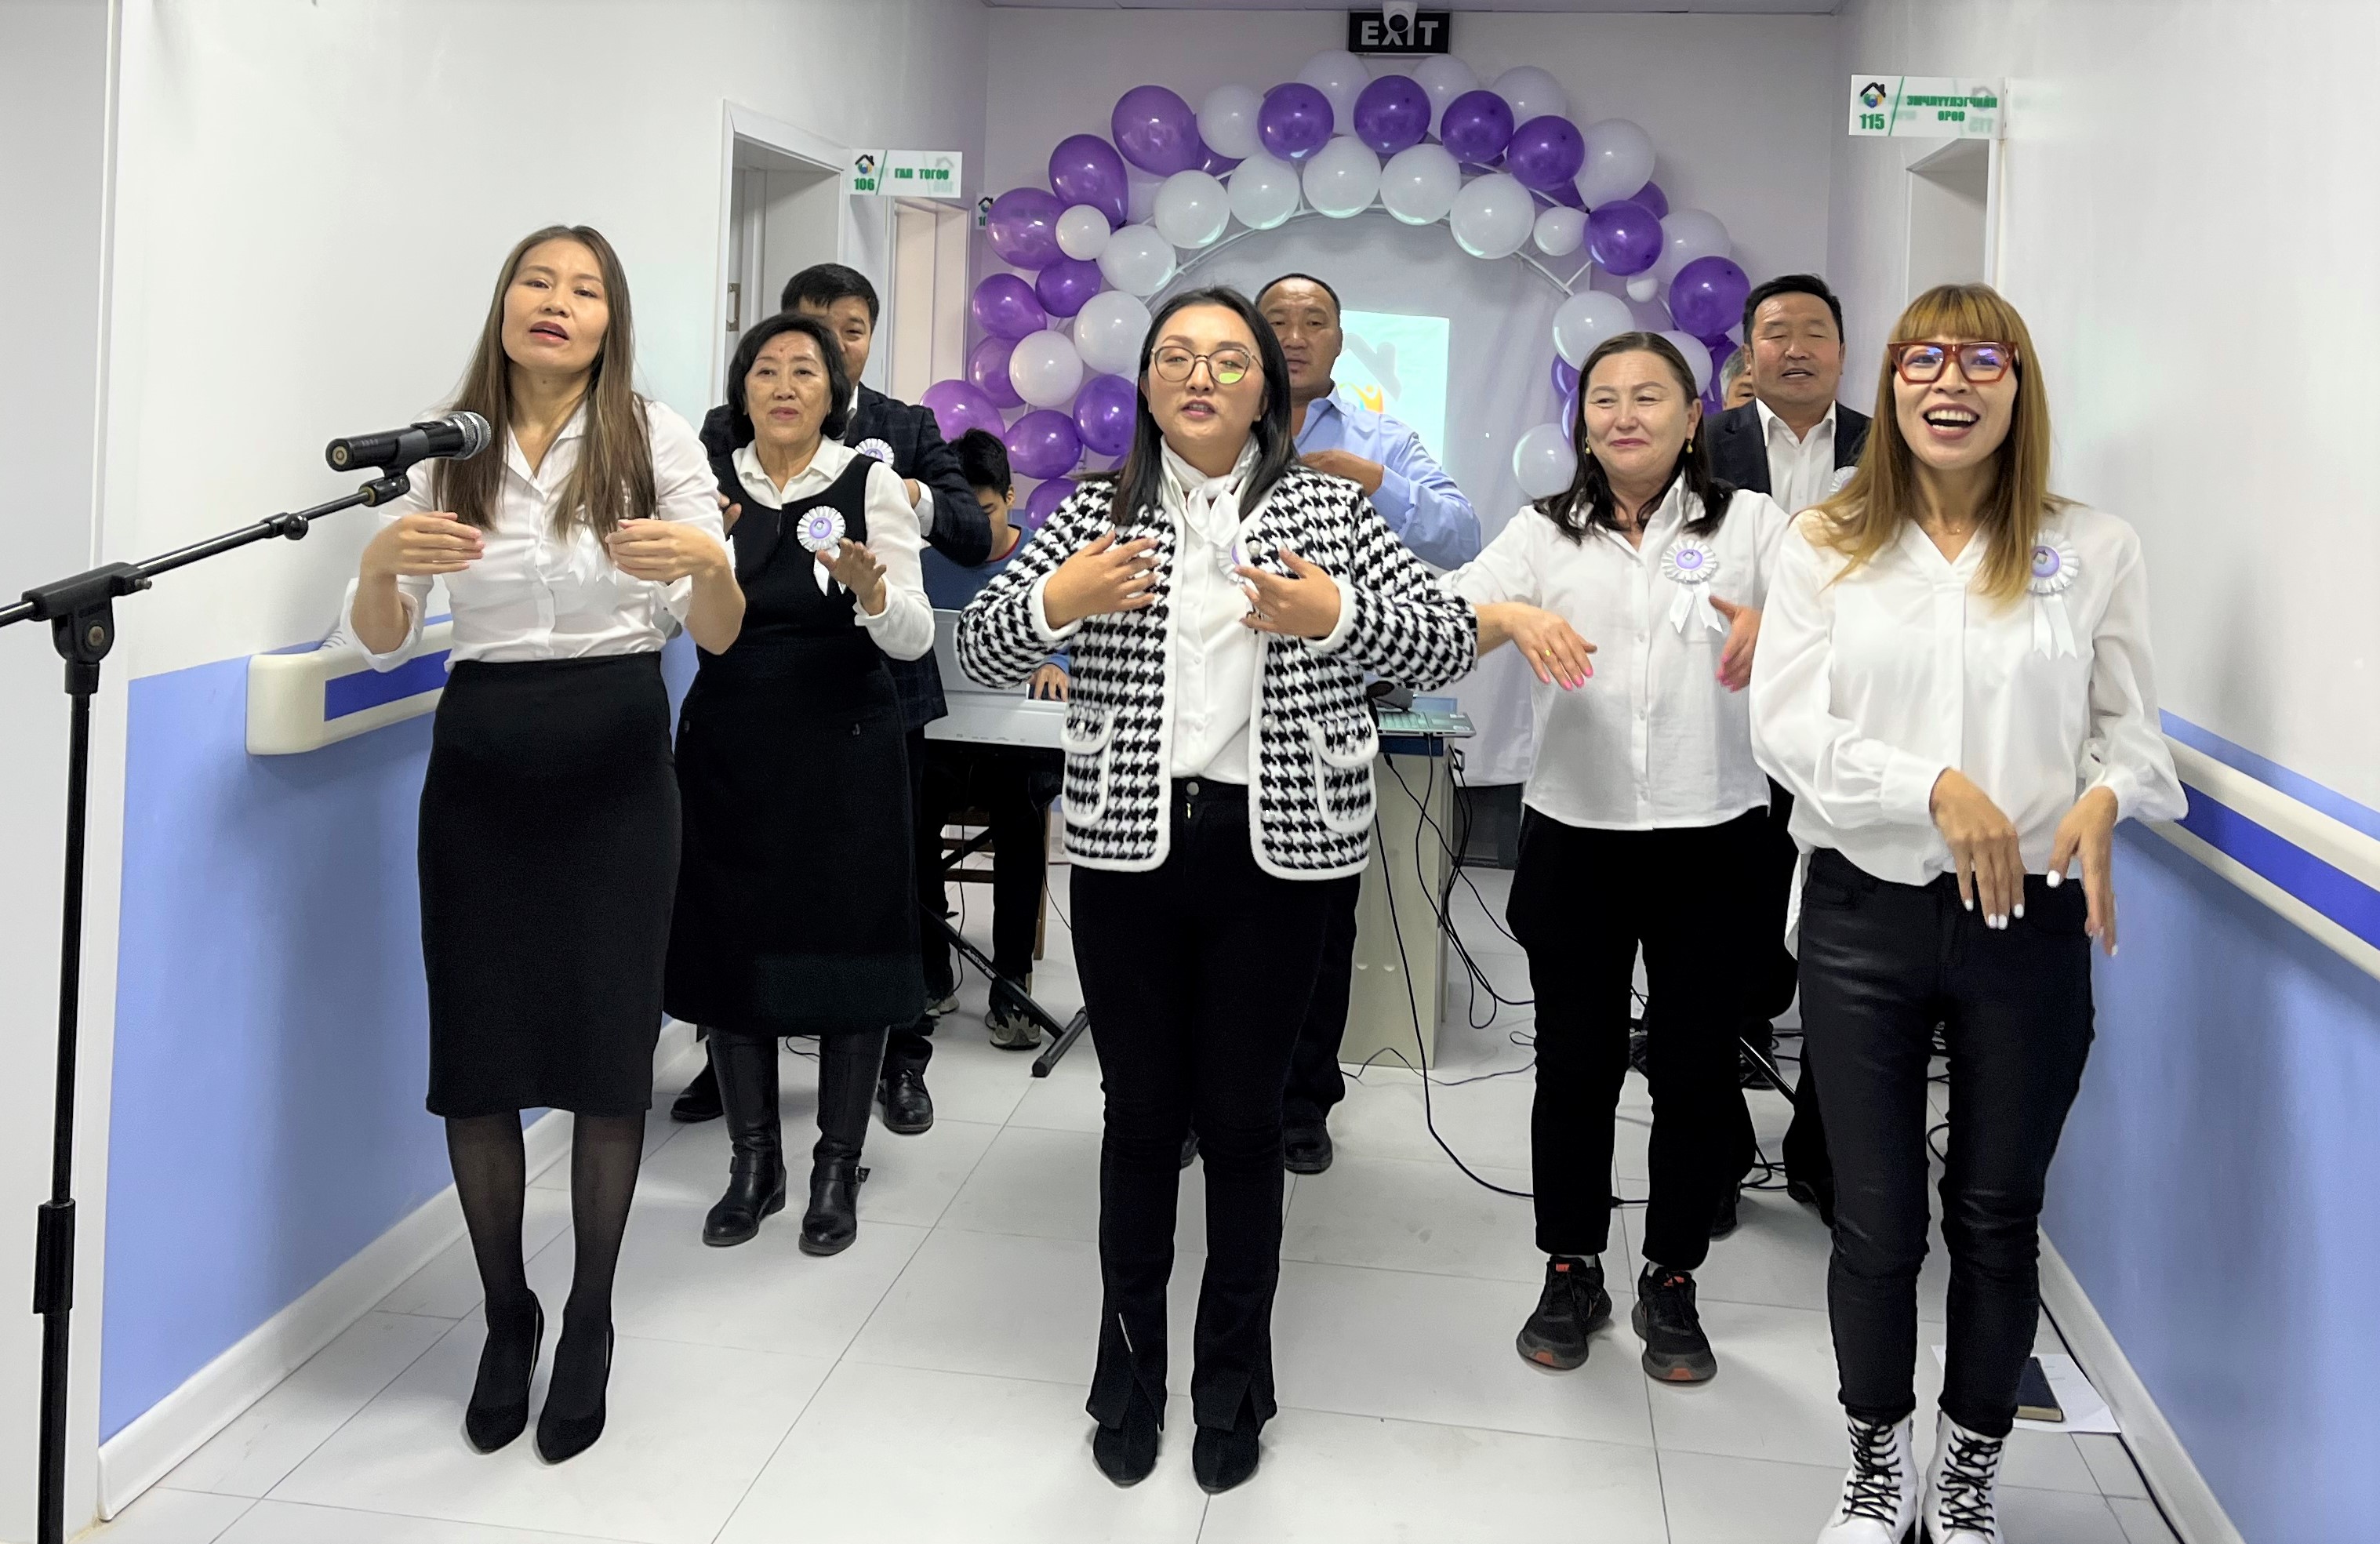 2022년 10월 4일, 몽골선교구가 봉헌한 그레이스 호스피스 센터 헌당 예배에서 직원들이 노래를 부르고 있다. 이 호스피스 센터는 의료 서비스를 제공할 수 있는 정식 의료 기관으로 인정받았다. 사진 제공, 연합감리교 세계선교부 아시아사무소.